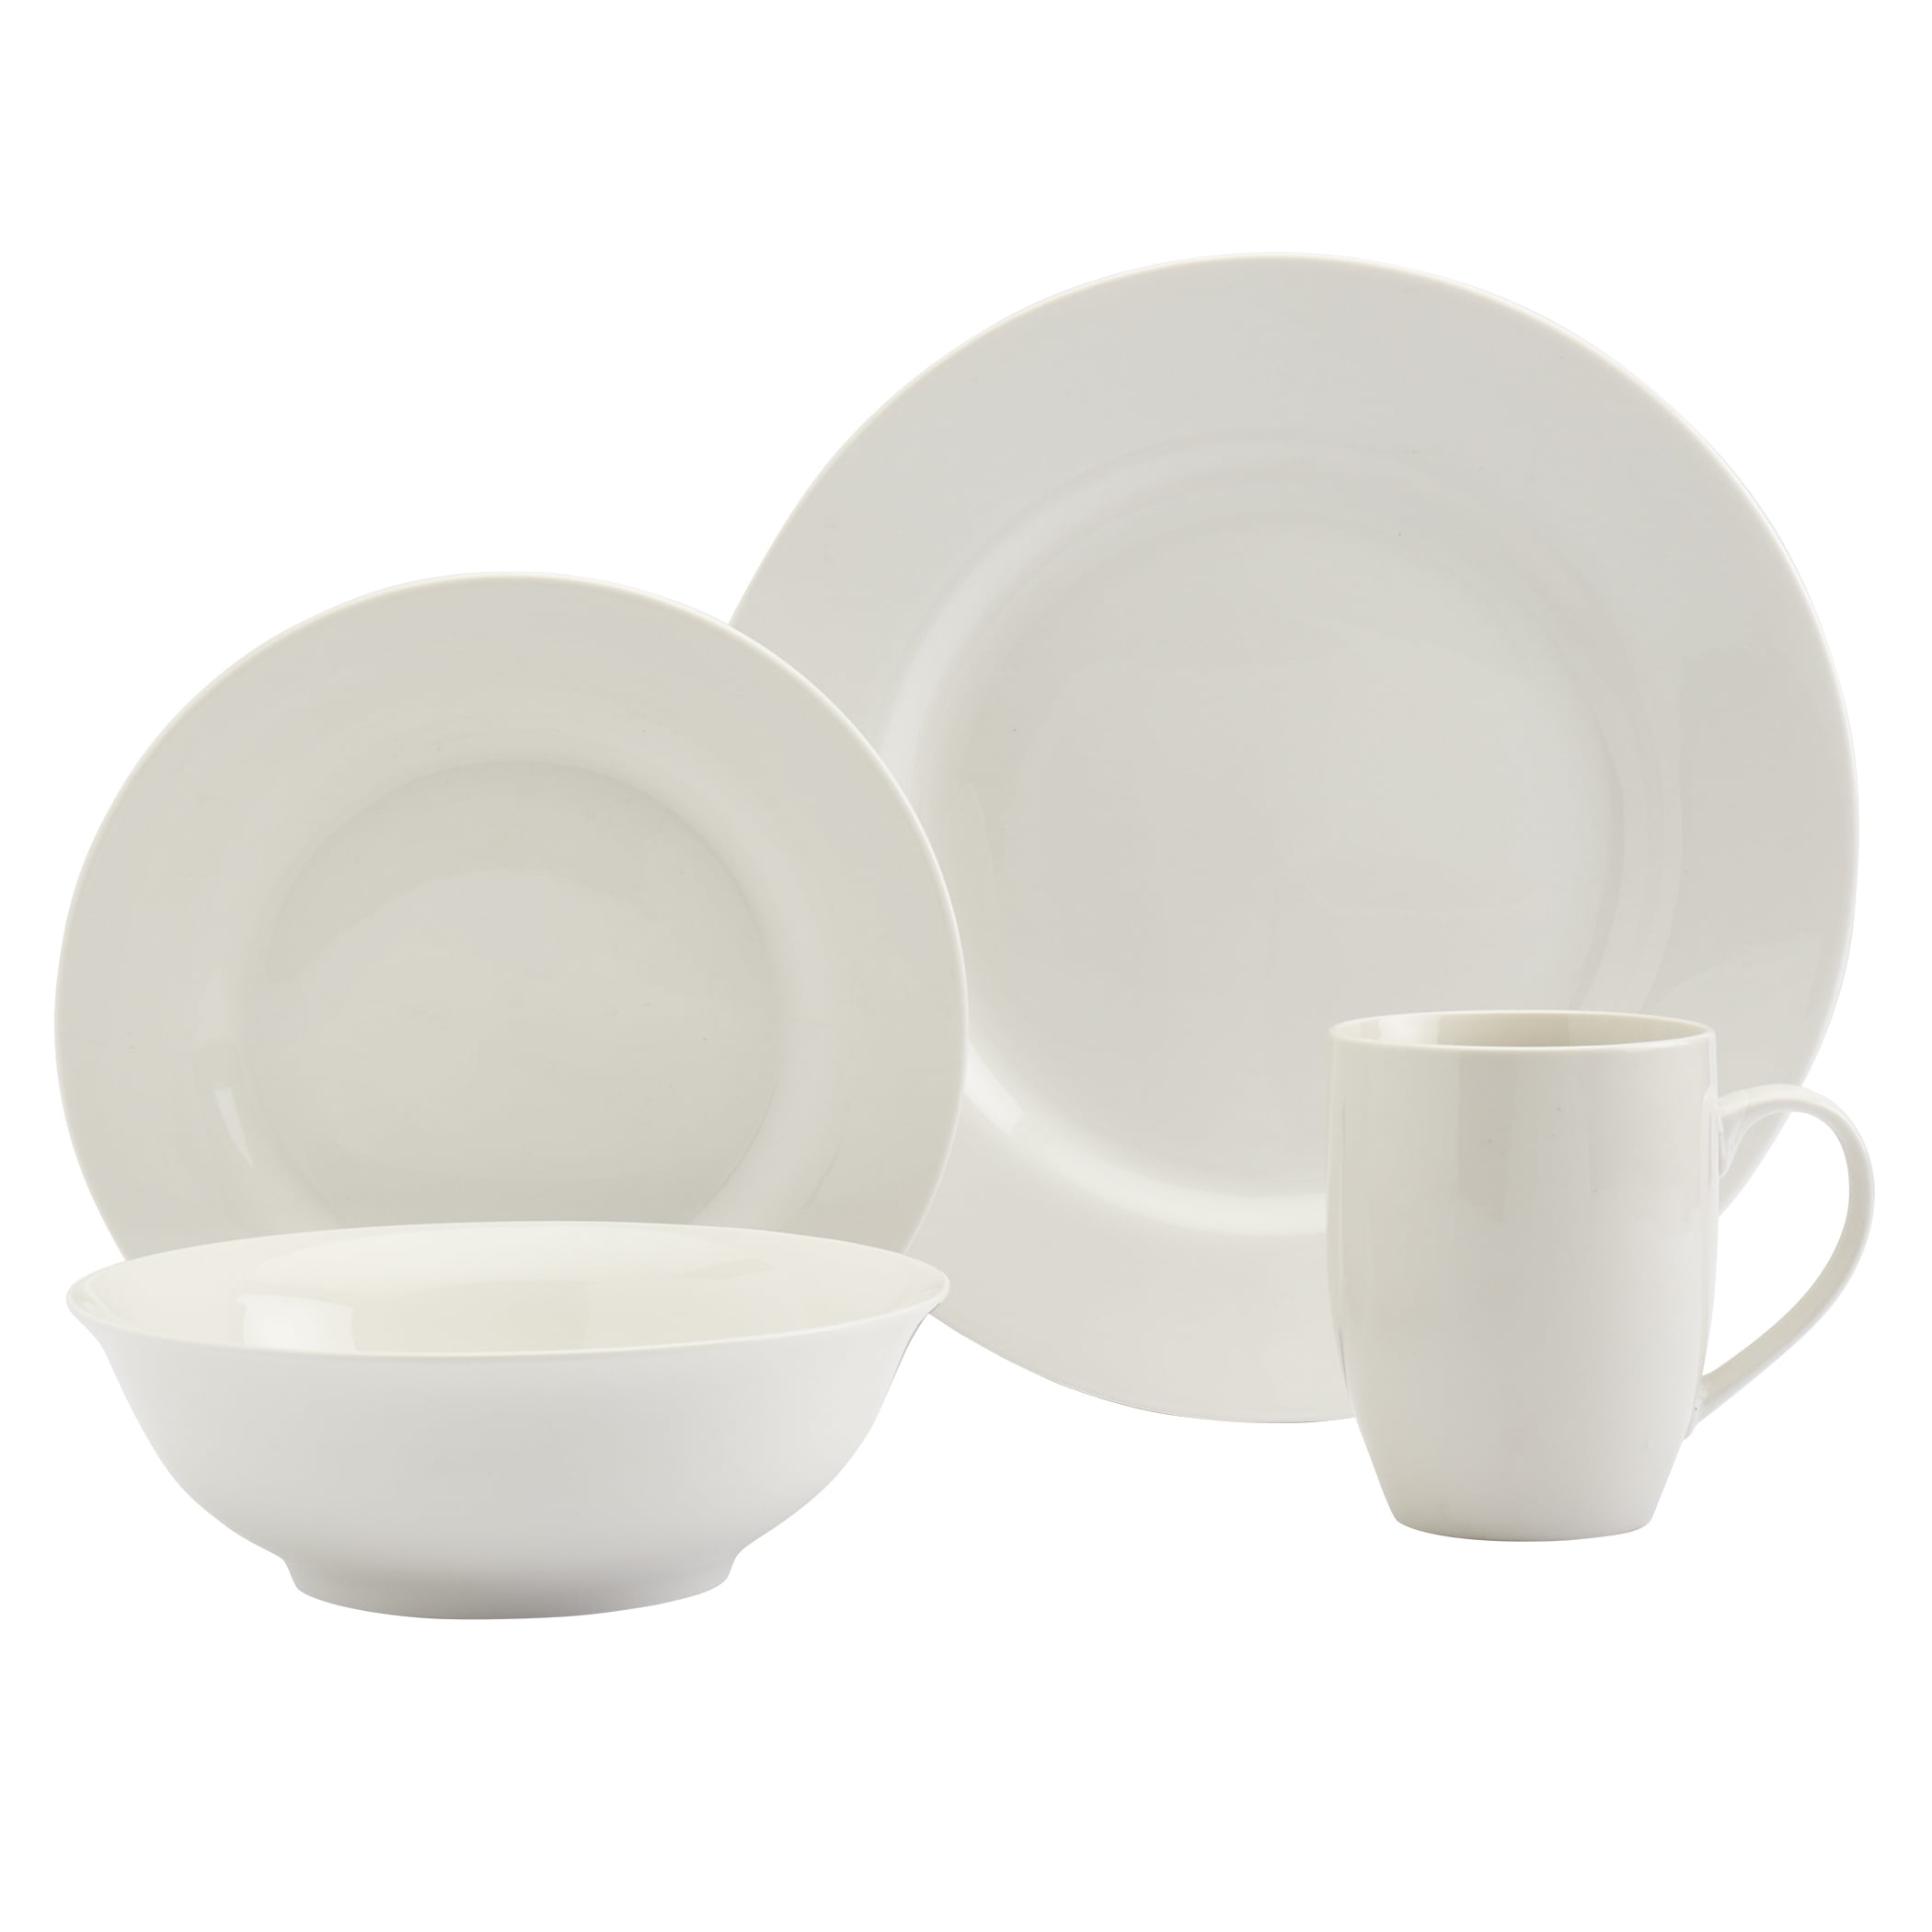 Details about   18-Piece Porcelain Crockery Square Dining Set White Plates Bowls 6 Place Setting 